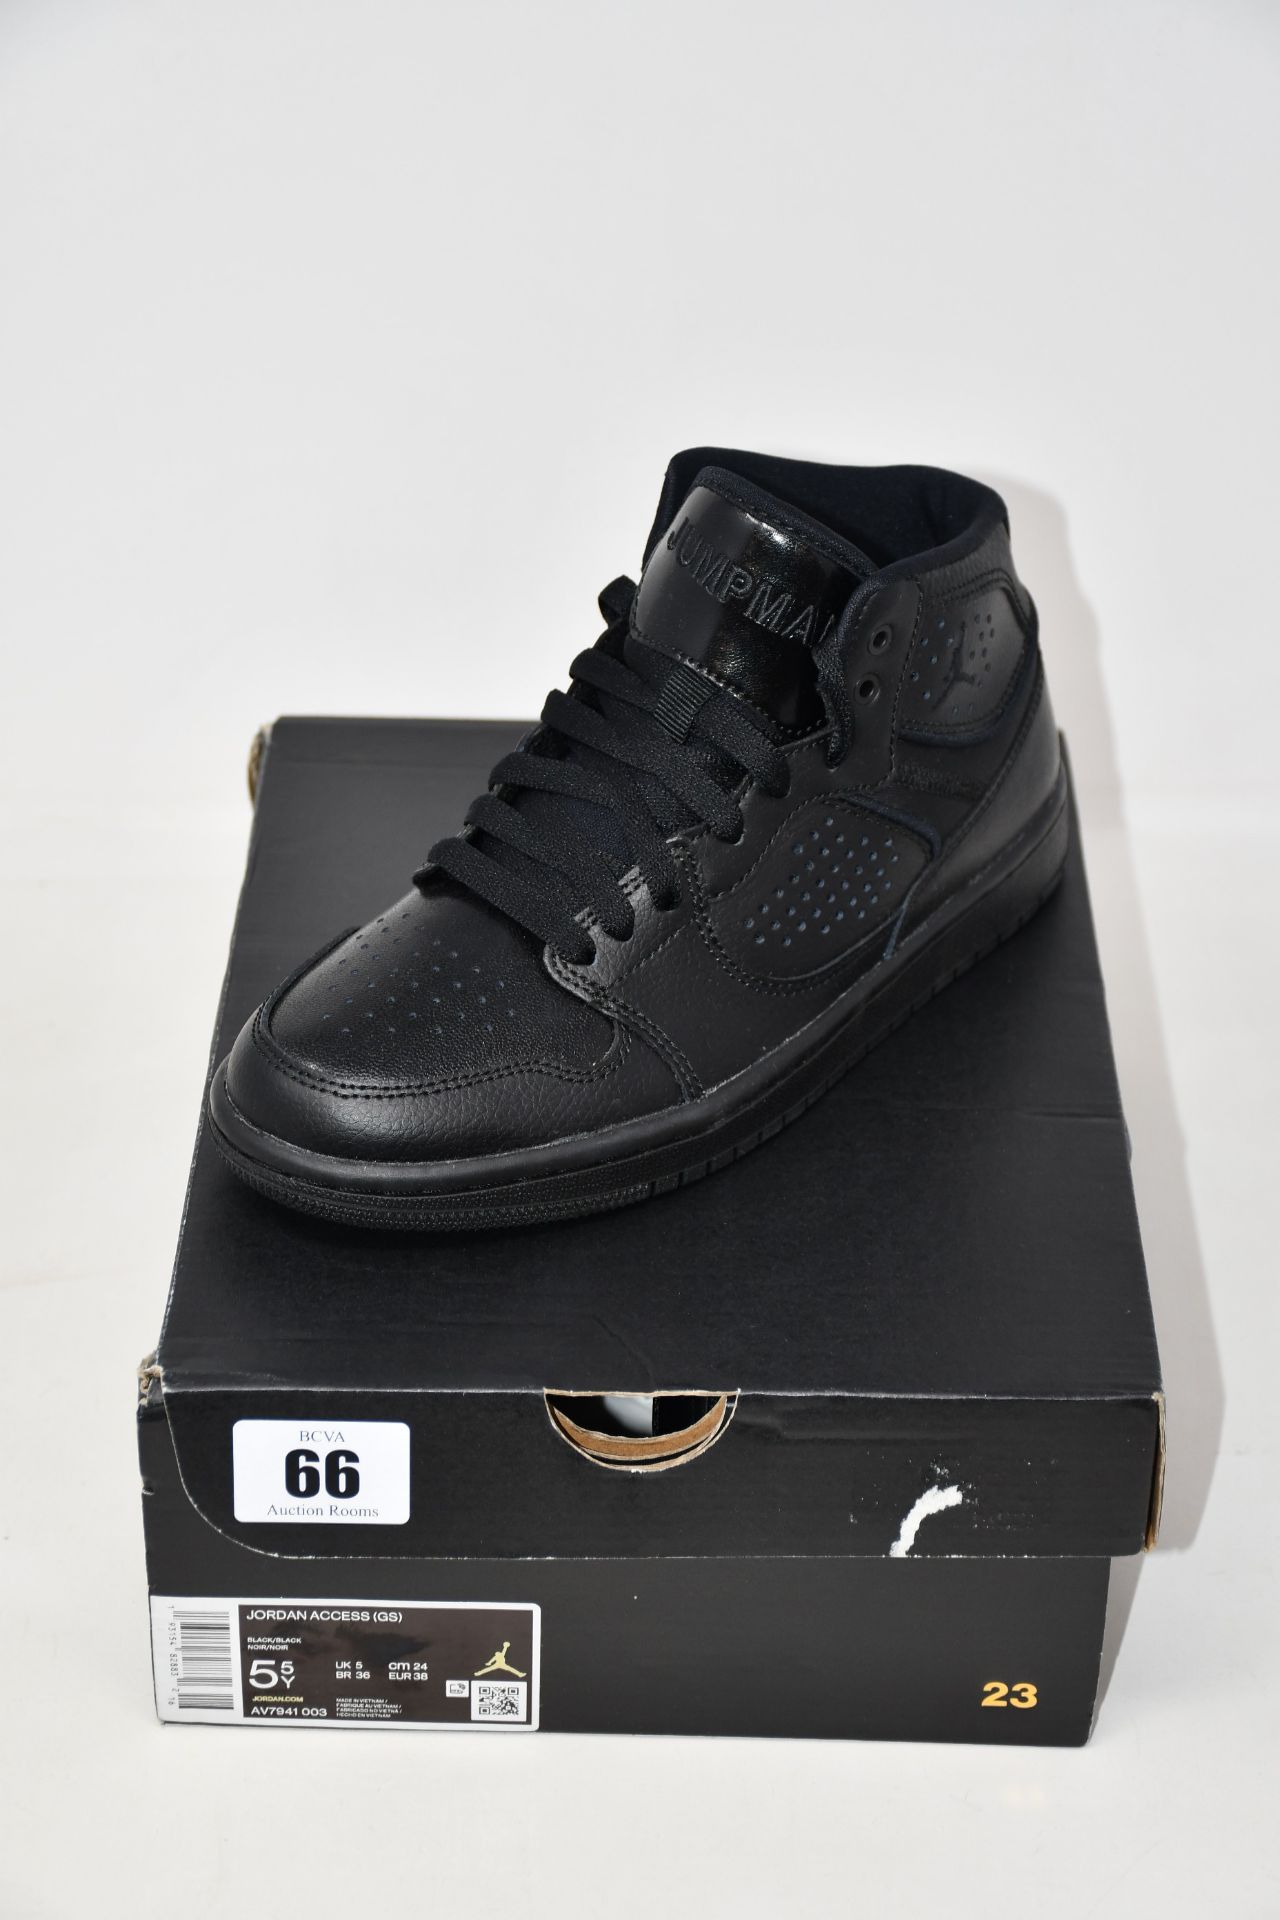 A pair of as new Nike Jordan Access (UK 5).